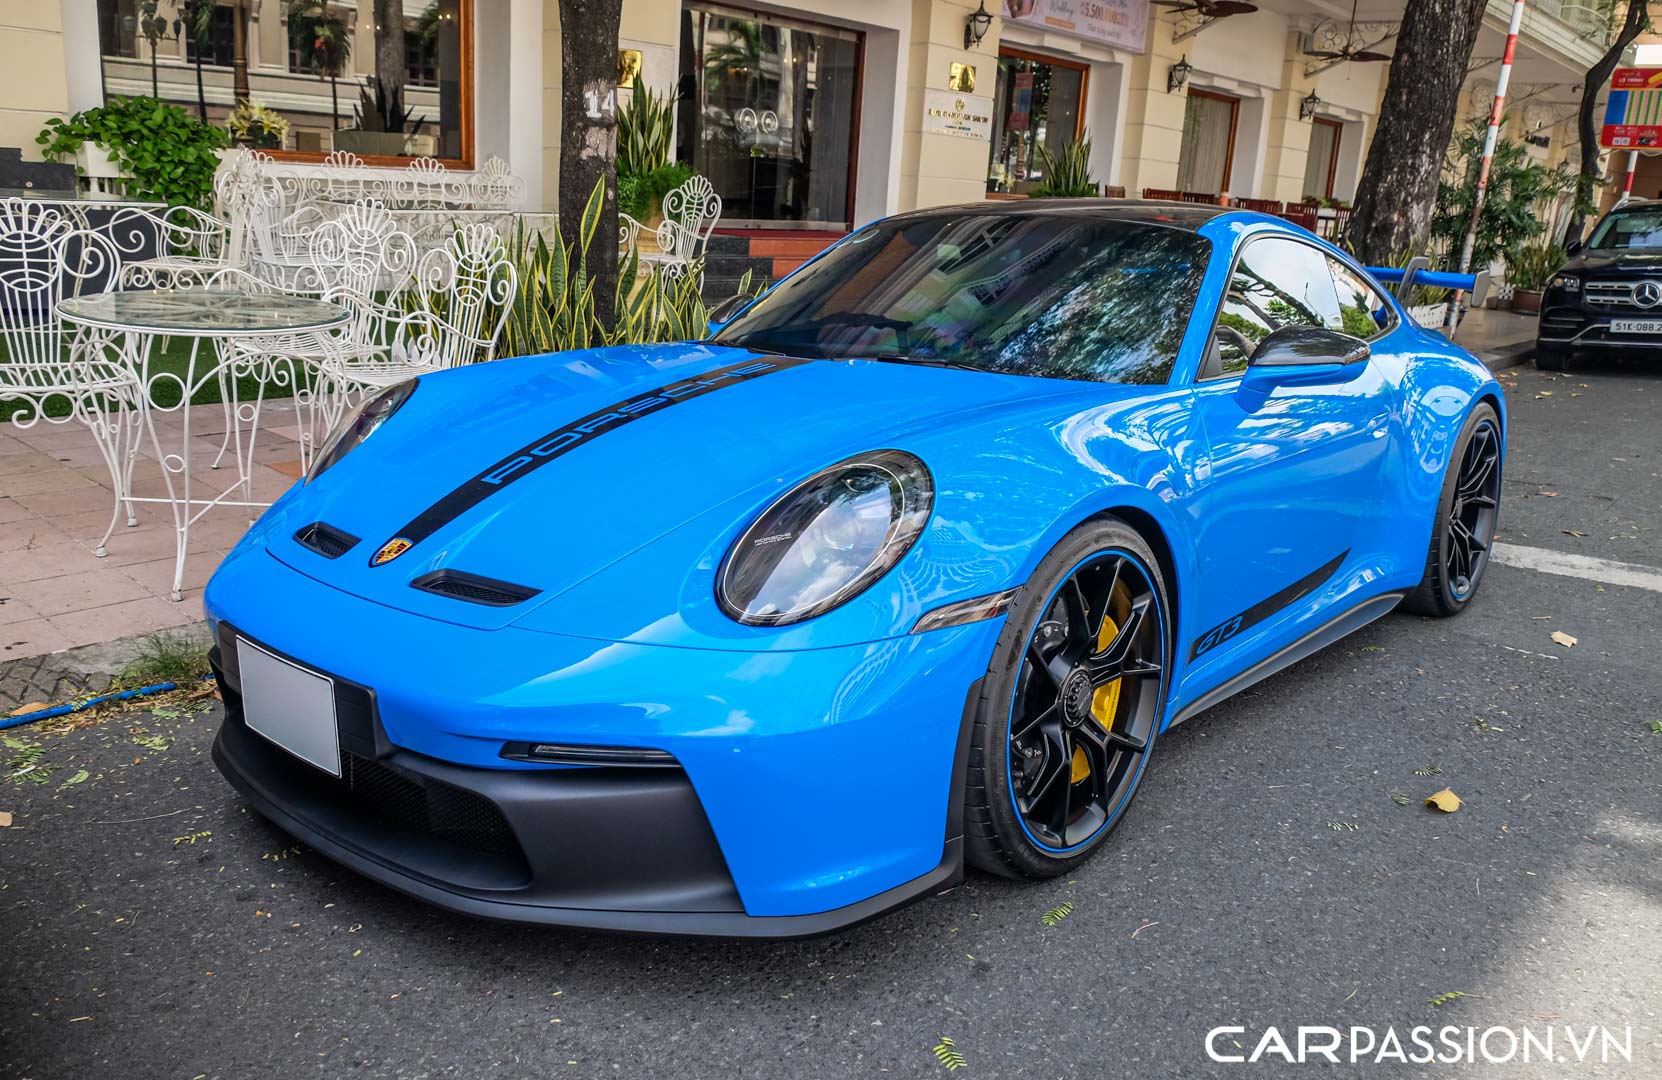 CP-Porsche 911 GT3 của doanh nhân Nguyễn Quốc Cường47.jpg